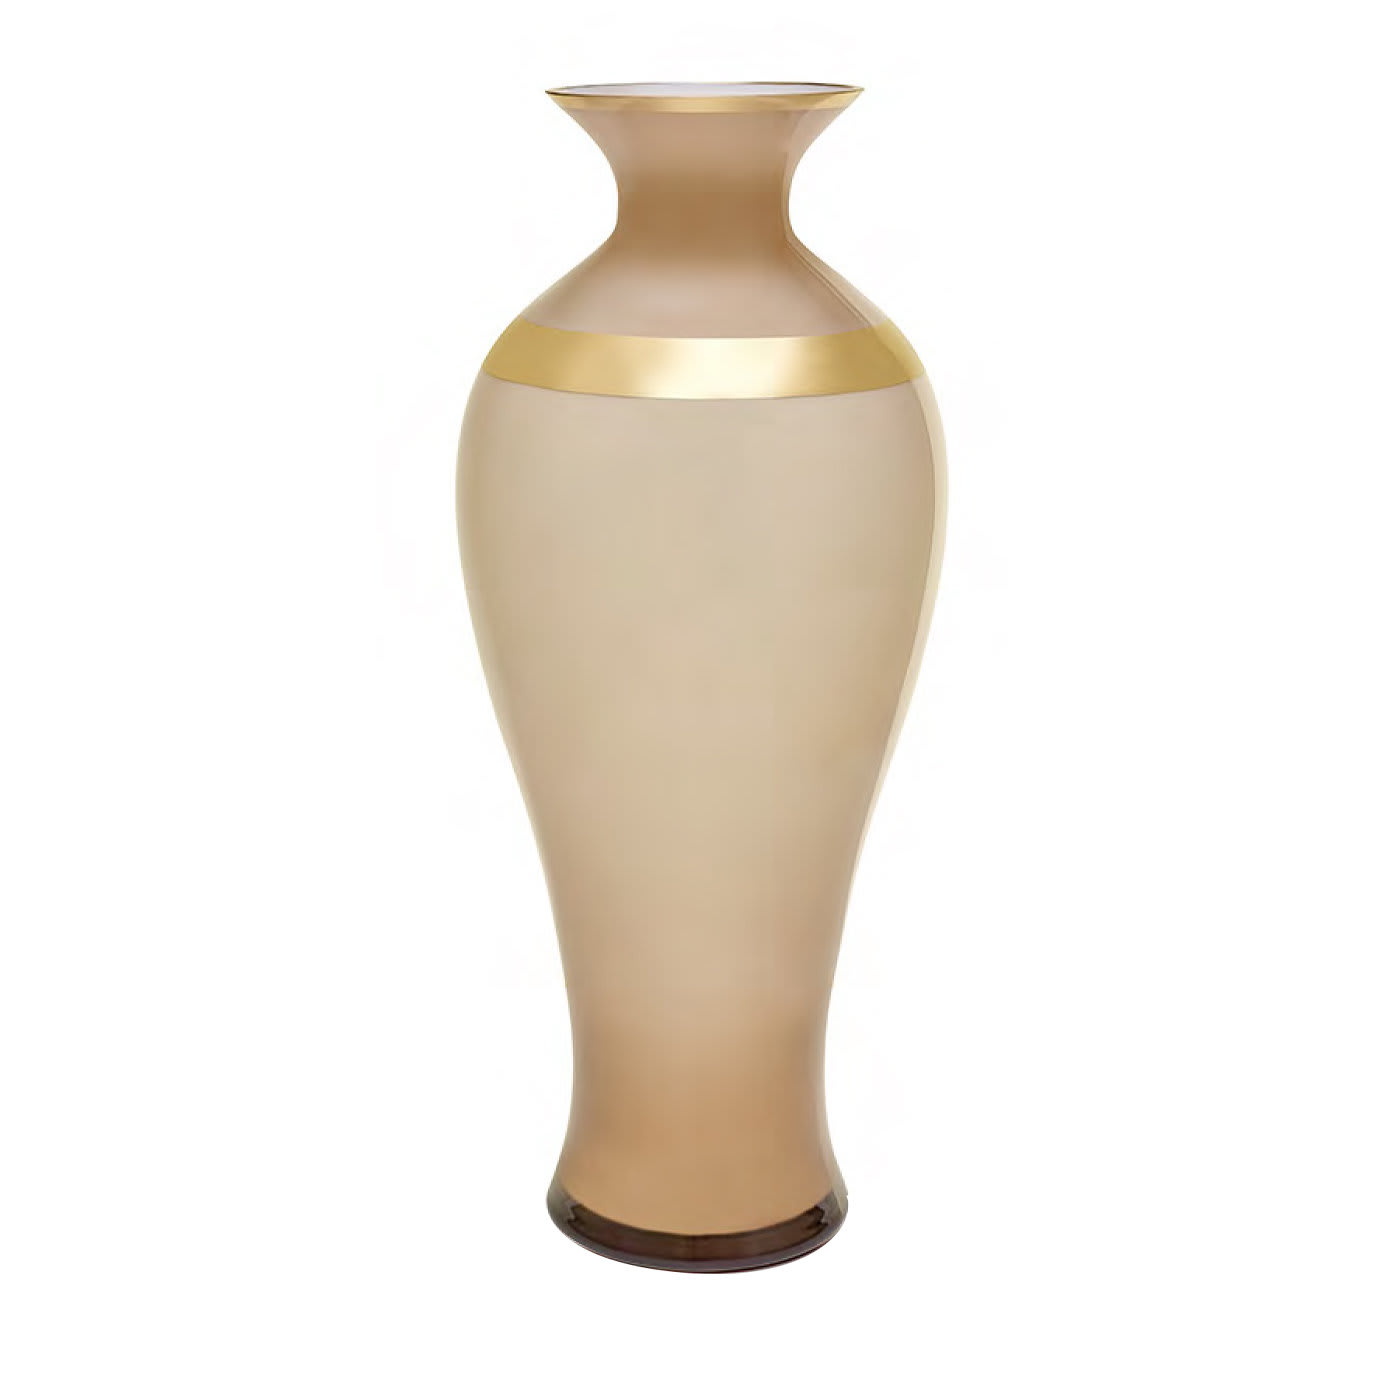 Saffo Large Matt Amphora - Pure 24k Gold - Mara Dal Cin for DFN